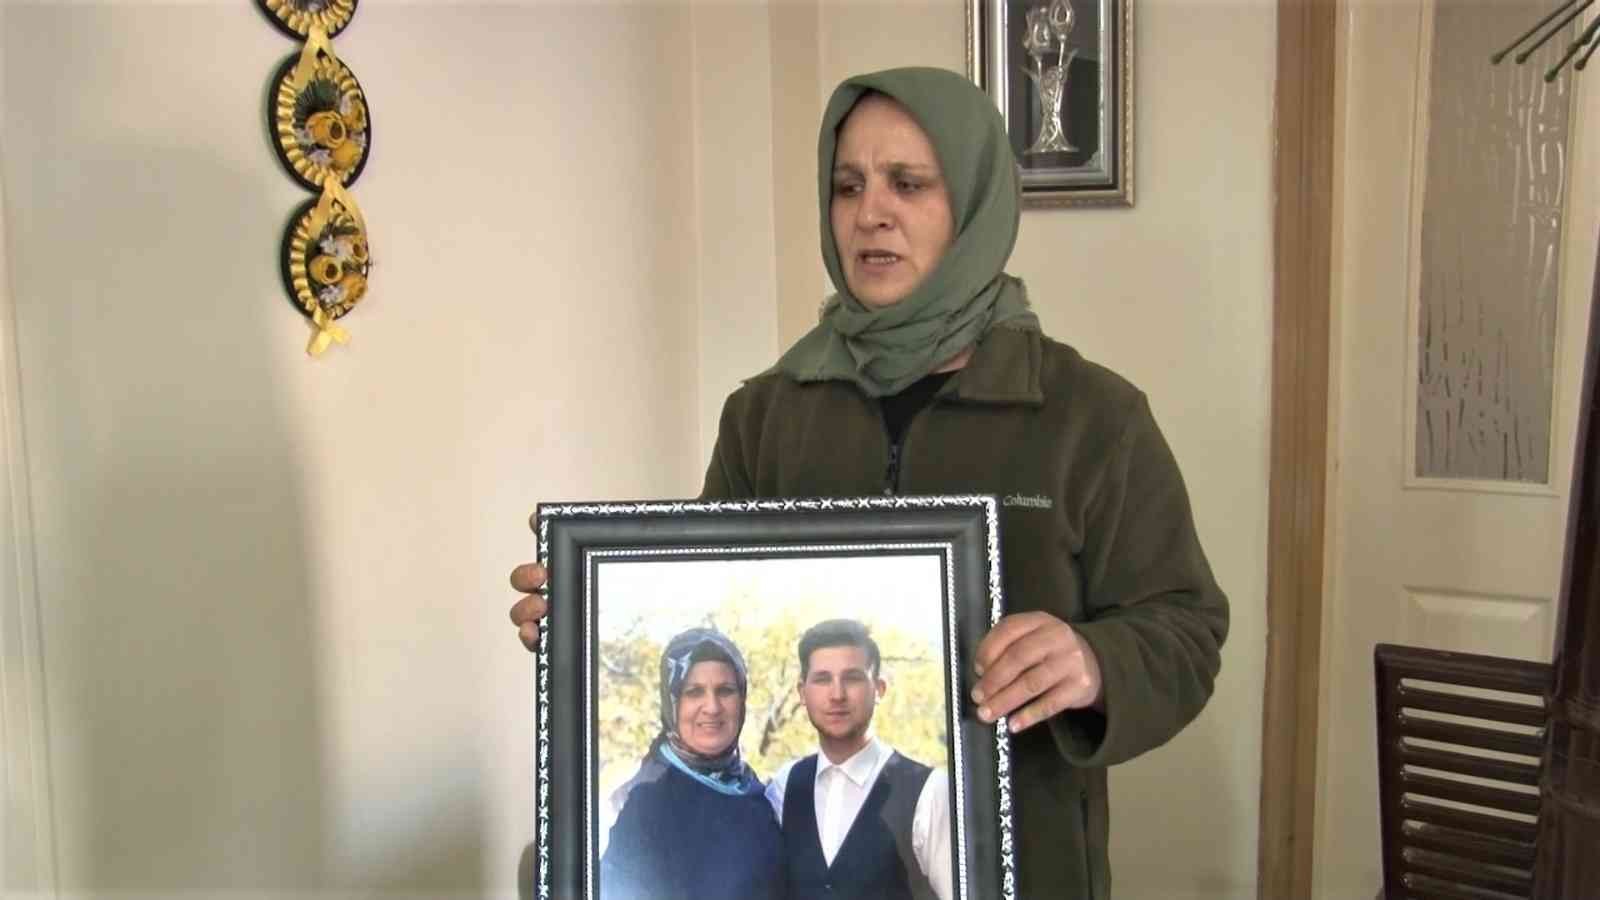 Kadıköy’de ‘yan baktın’ kavgasında öldürülen gencin ailesi konuştu